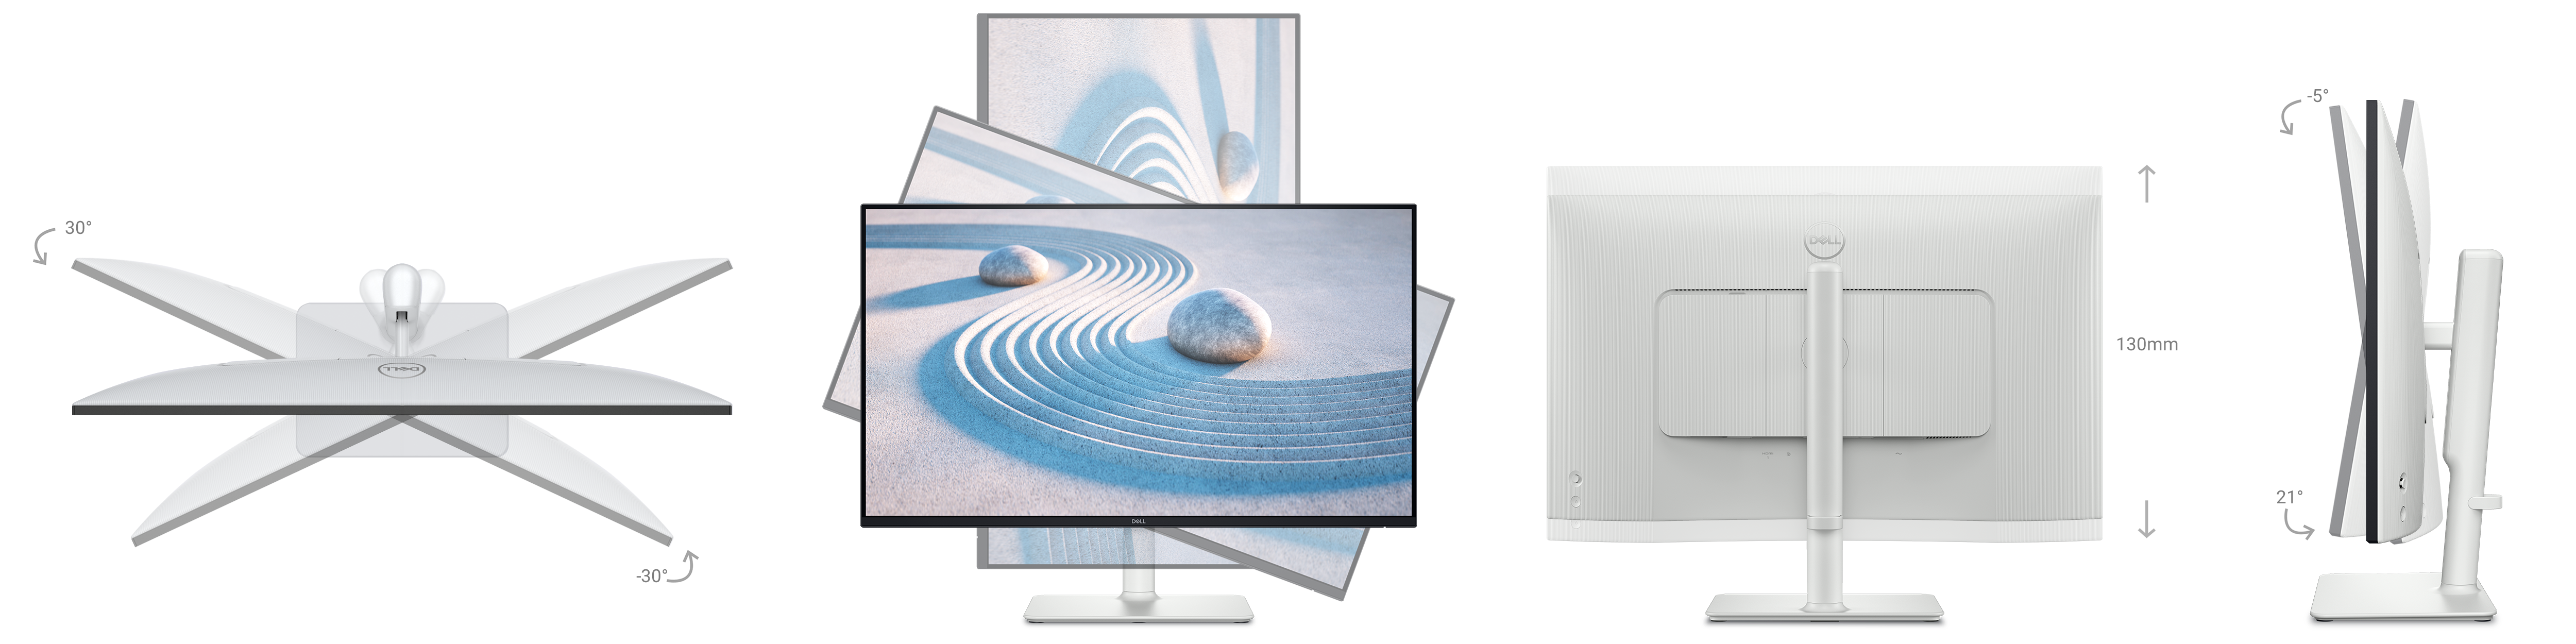 Verzameling van afbeeldingen van de monitor die 30 graden kan kantelen, kan draaien, 21 graden kan roteren en 130 mm in hoogte kan worden aangepast.